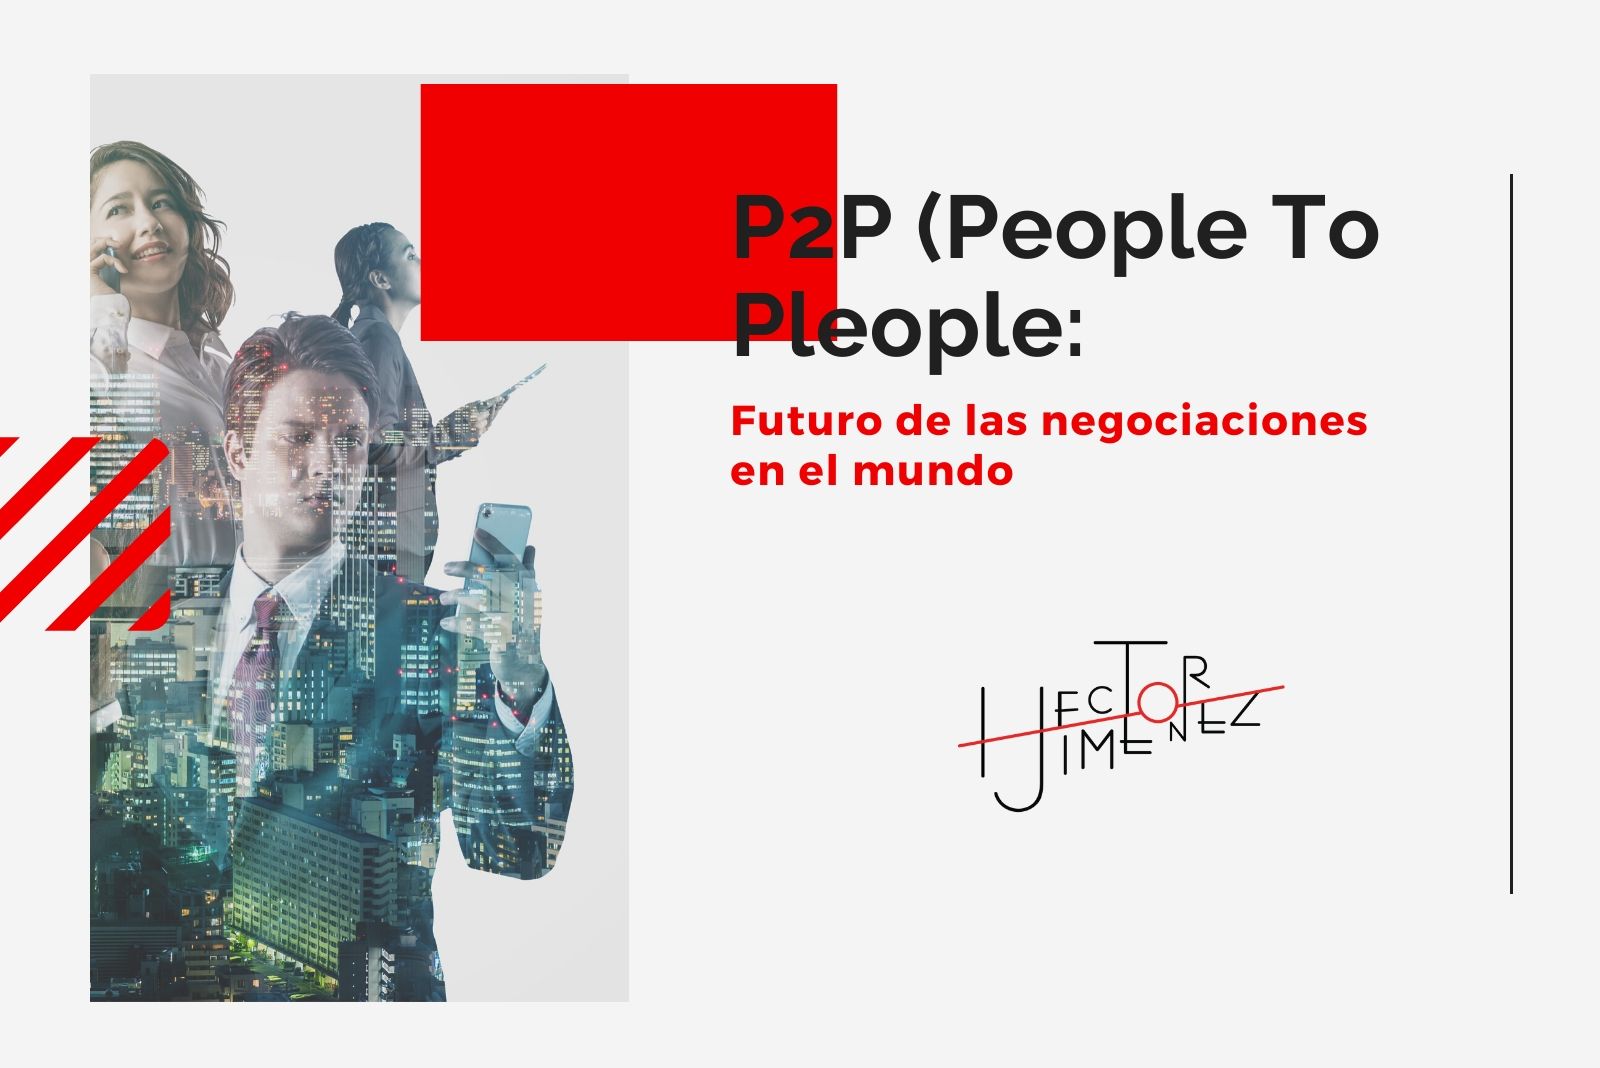 Hector-Jimenez-P2P-Futuro-de-las-negociaciones-en-el-mundo-1